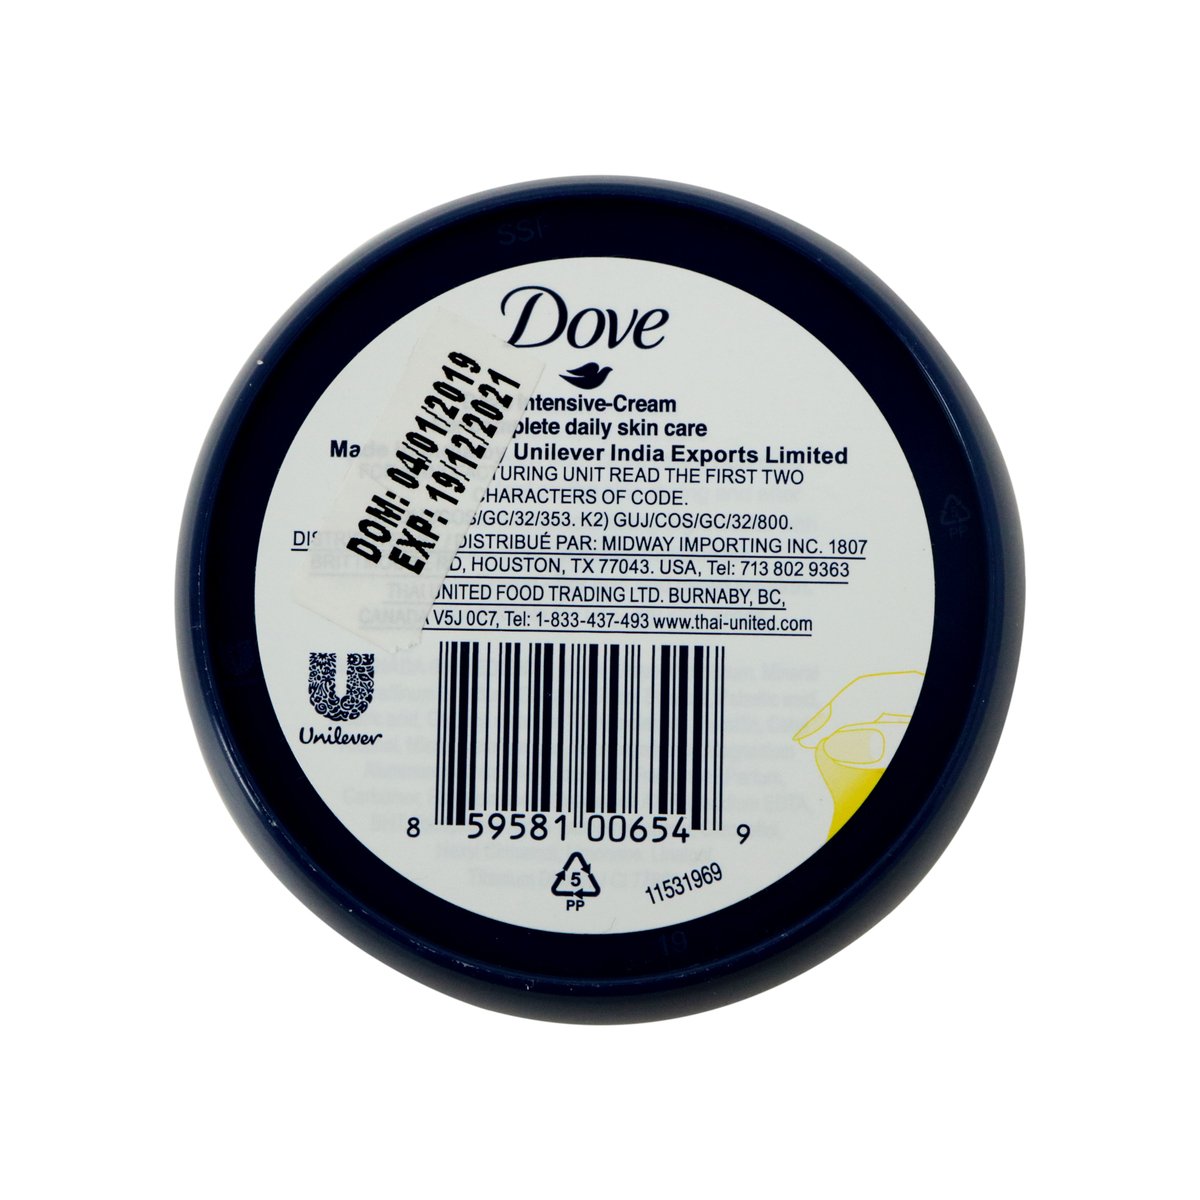 Dove Insentive Cream 75ml